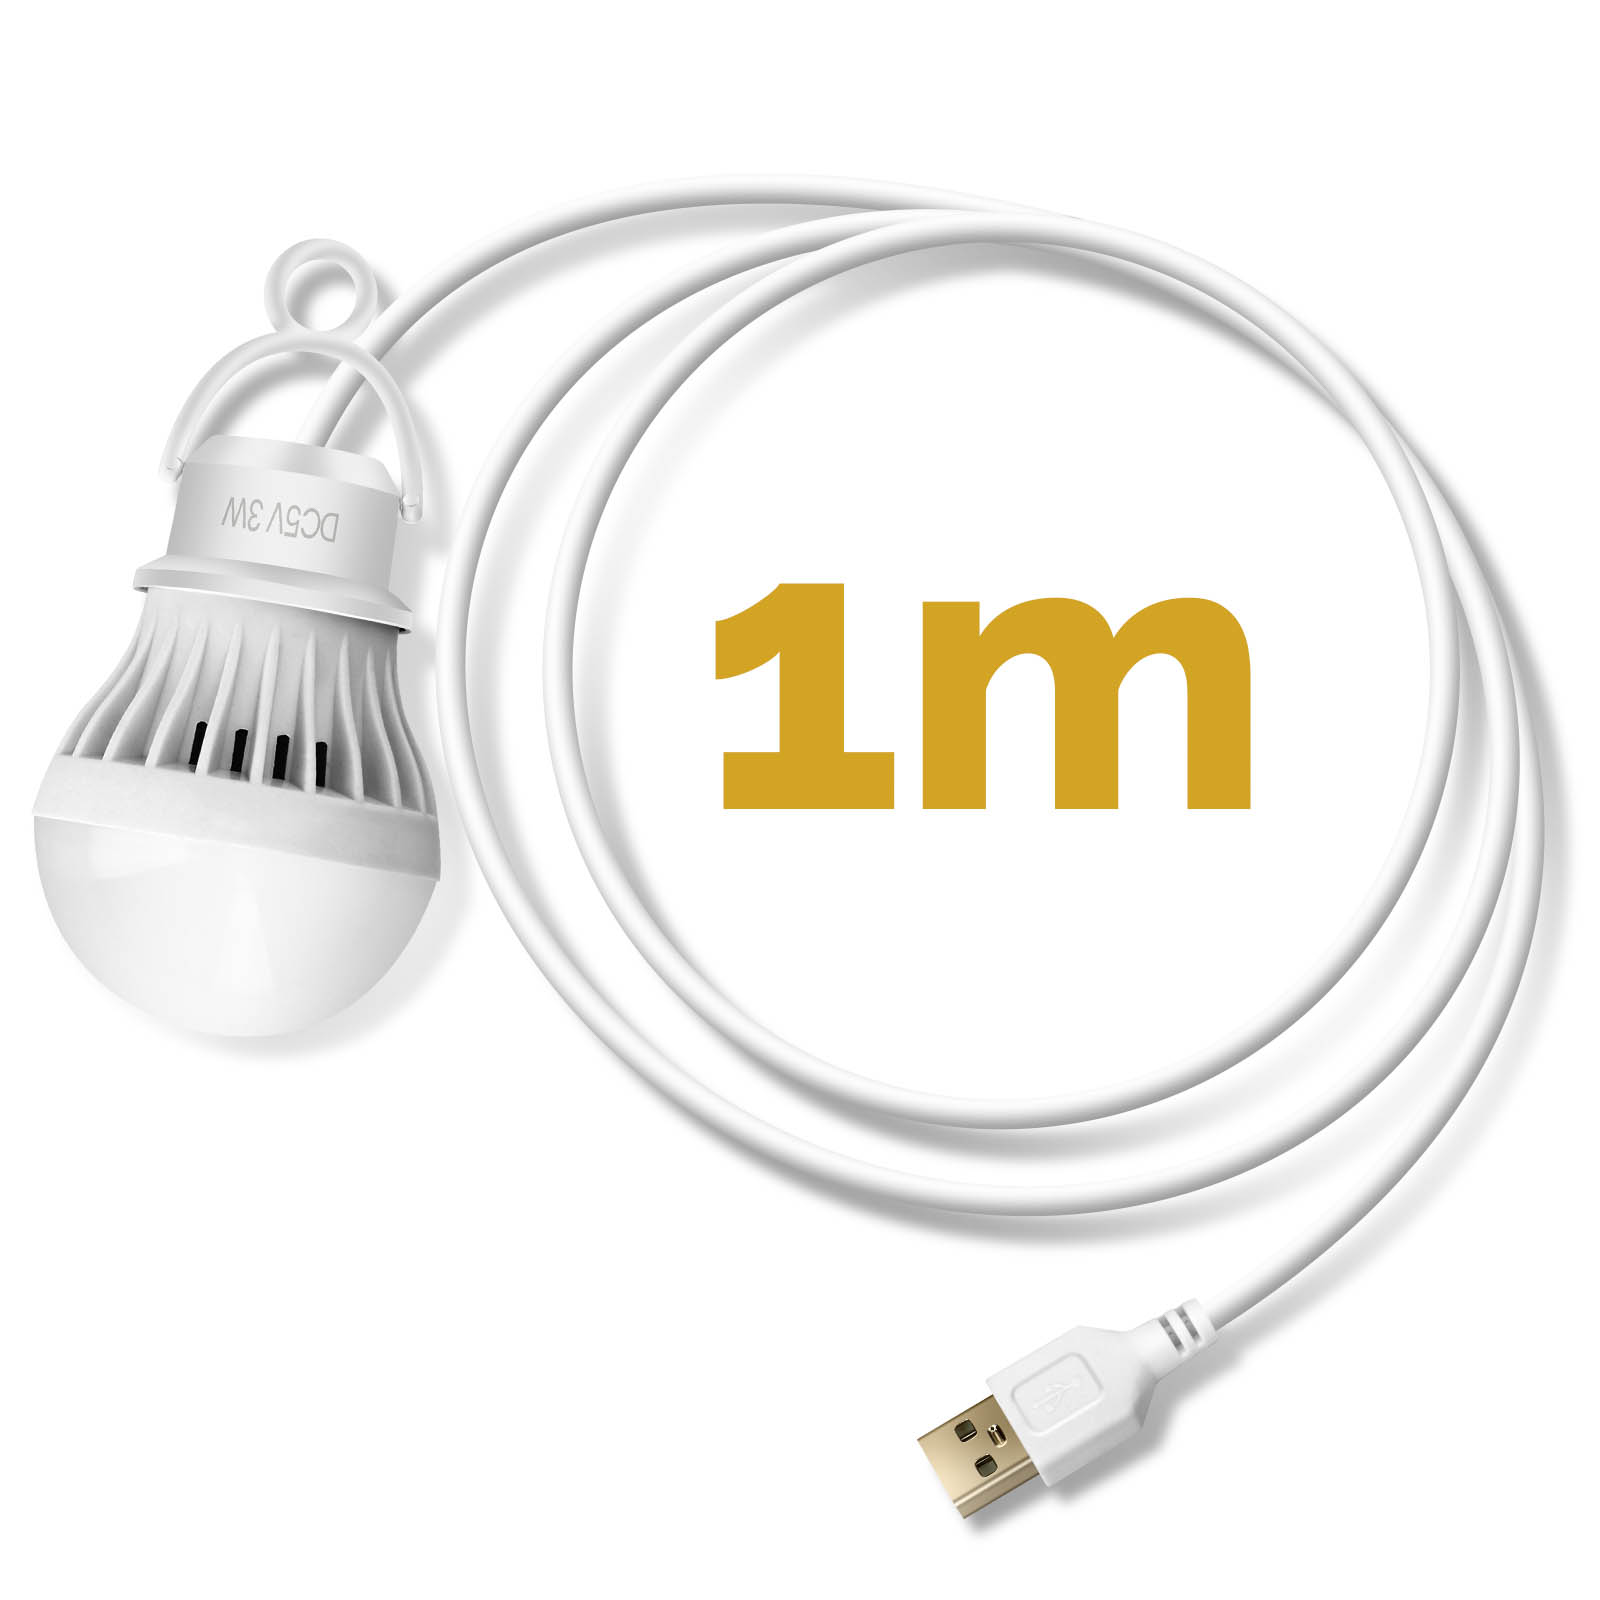  KAYYELAMP Conveniente bombilla LED simple de 3 W, luz blanca,  bombilla de manguera de metal, alimentación por 5 V, ángulo de carga USB,  mini lámpara de mesa ajustable para lectura, camping, 